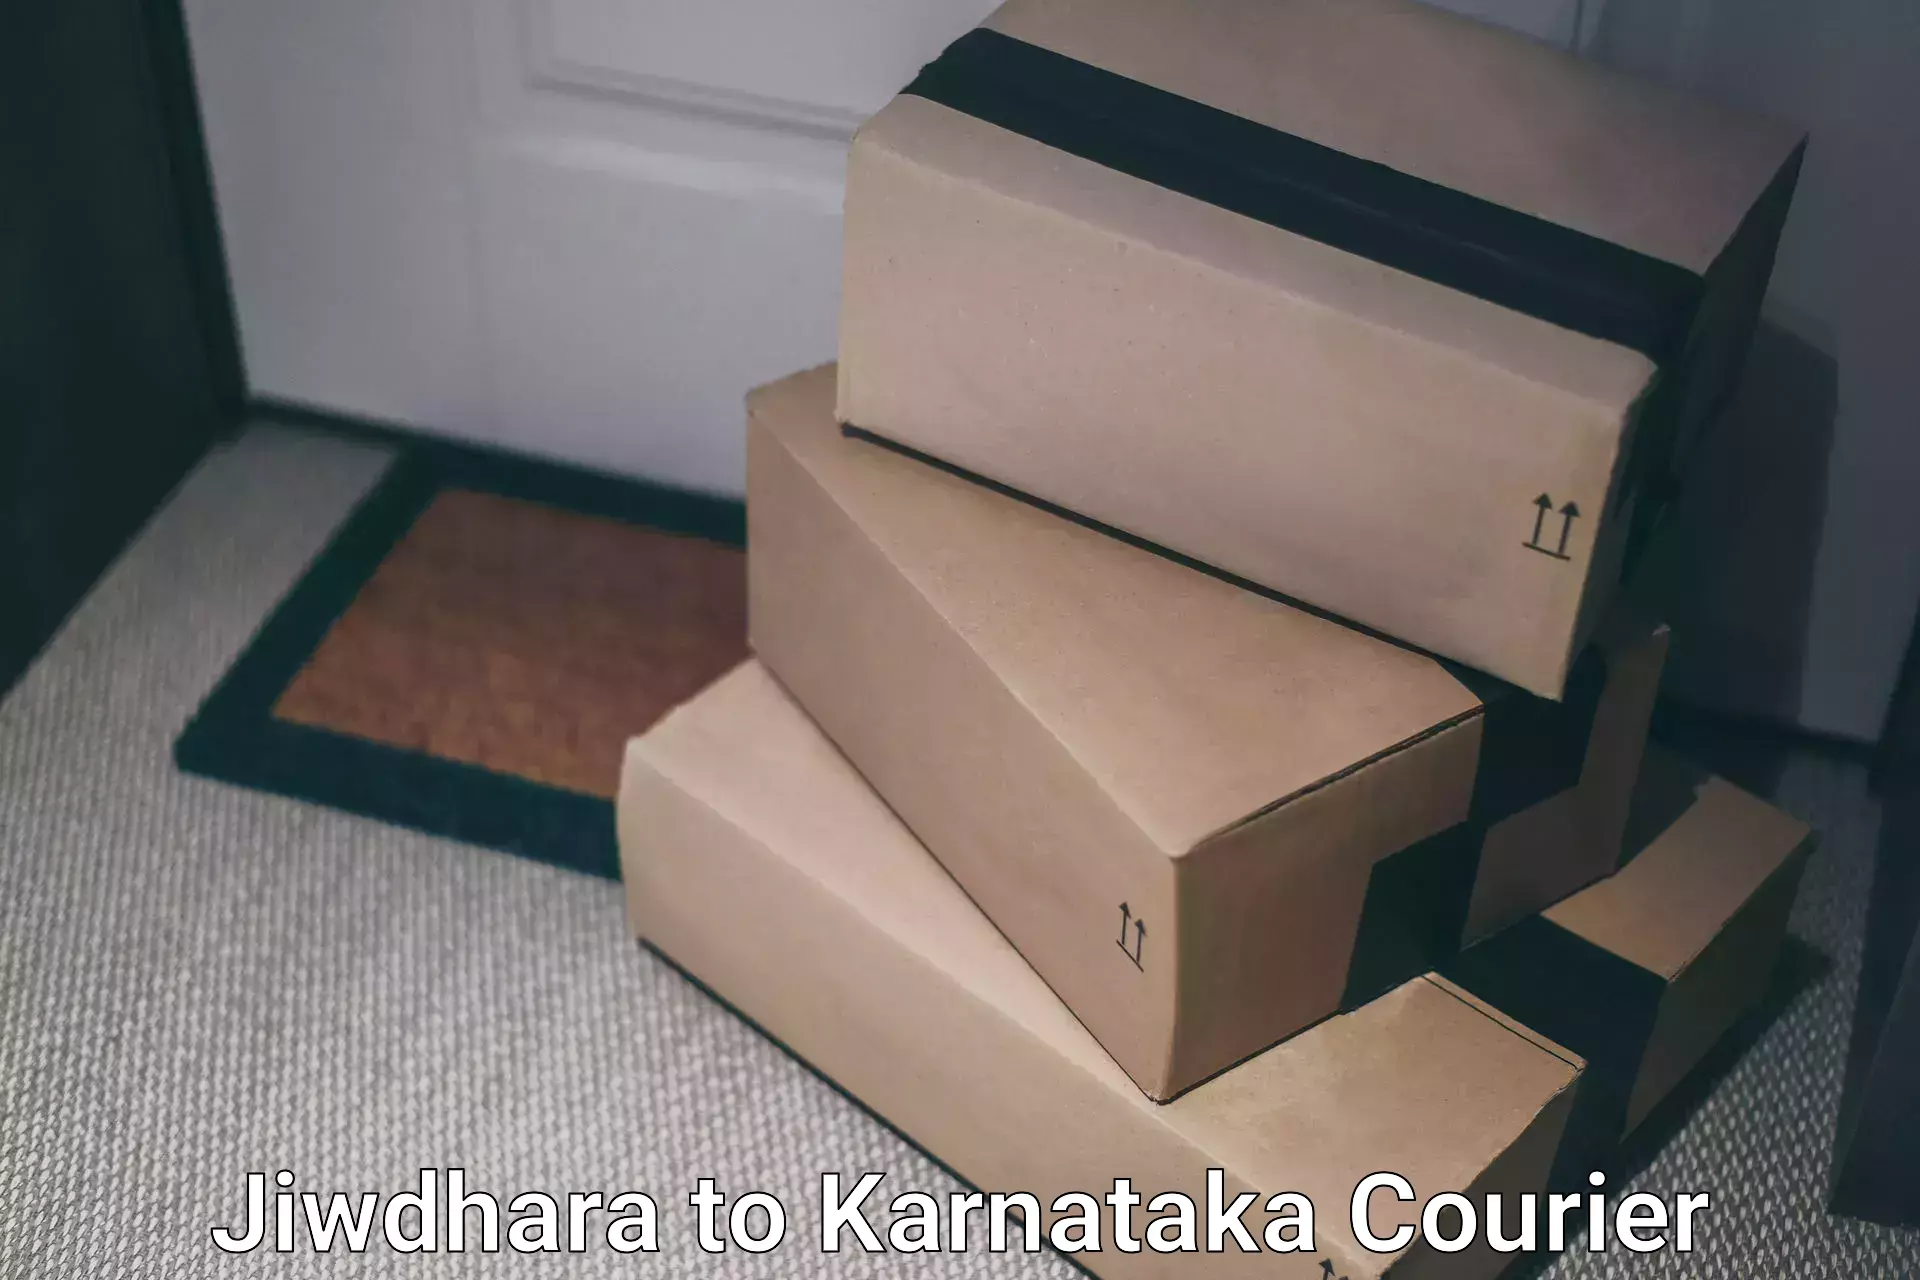 Fragile item shipping Jiwdhara to Karnataka